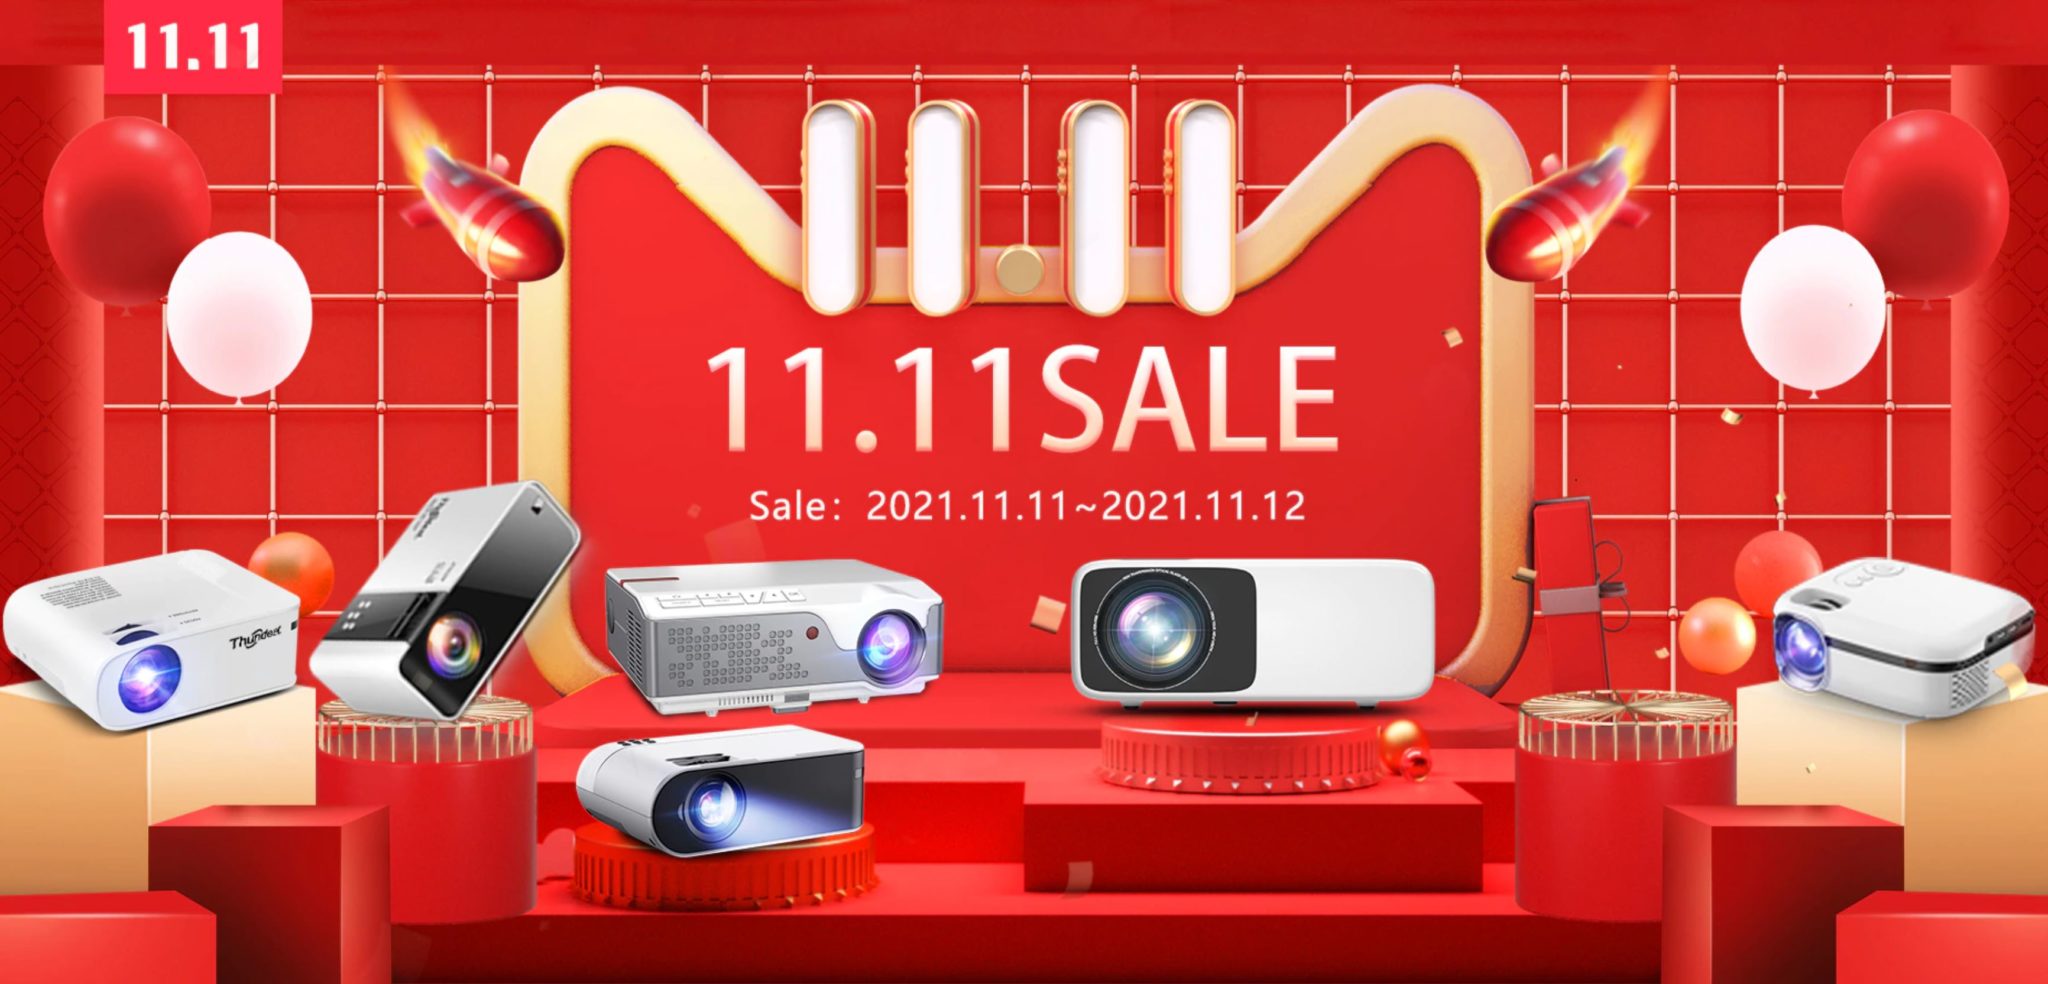 Rewelacyjnie tanie projektory z AliExpress - promocja projektorów ThundeaL z okazji 11.11 - promocja